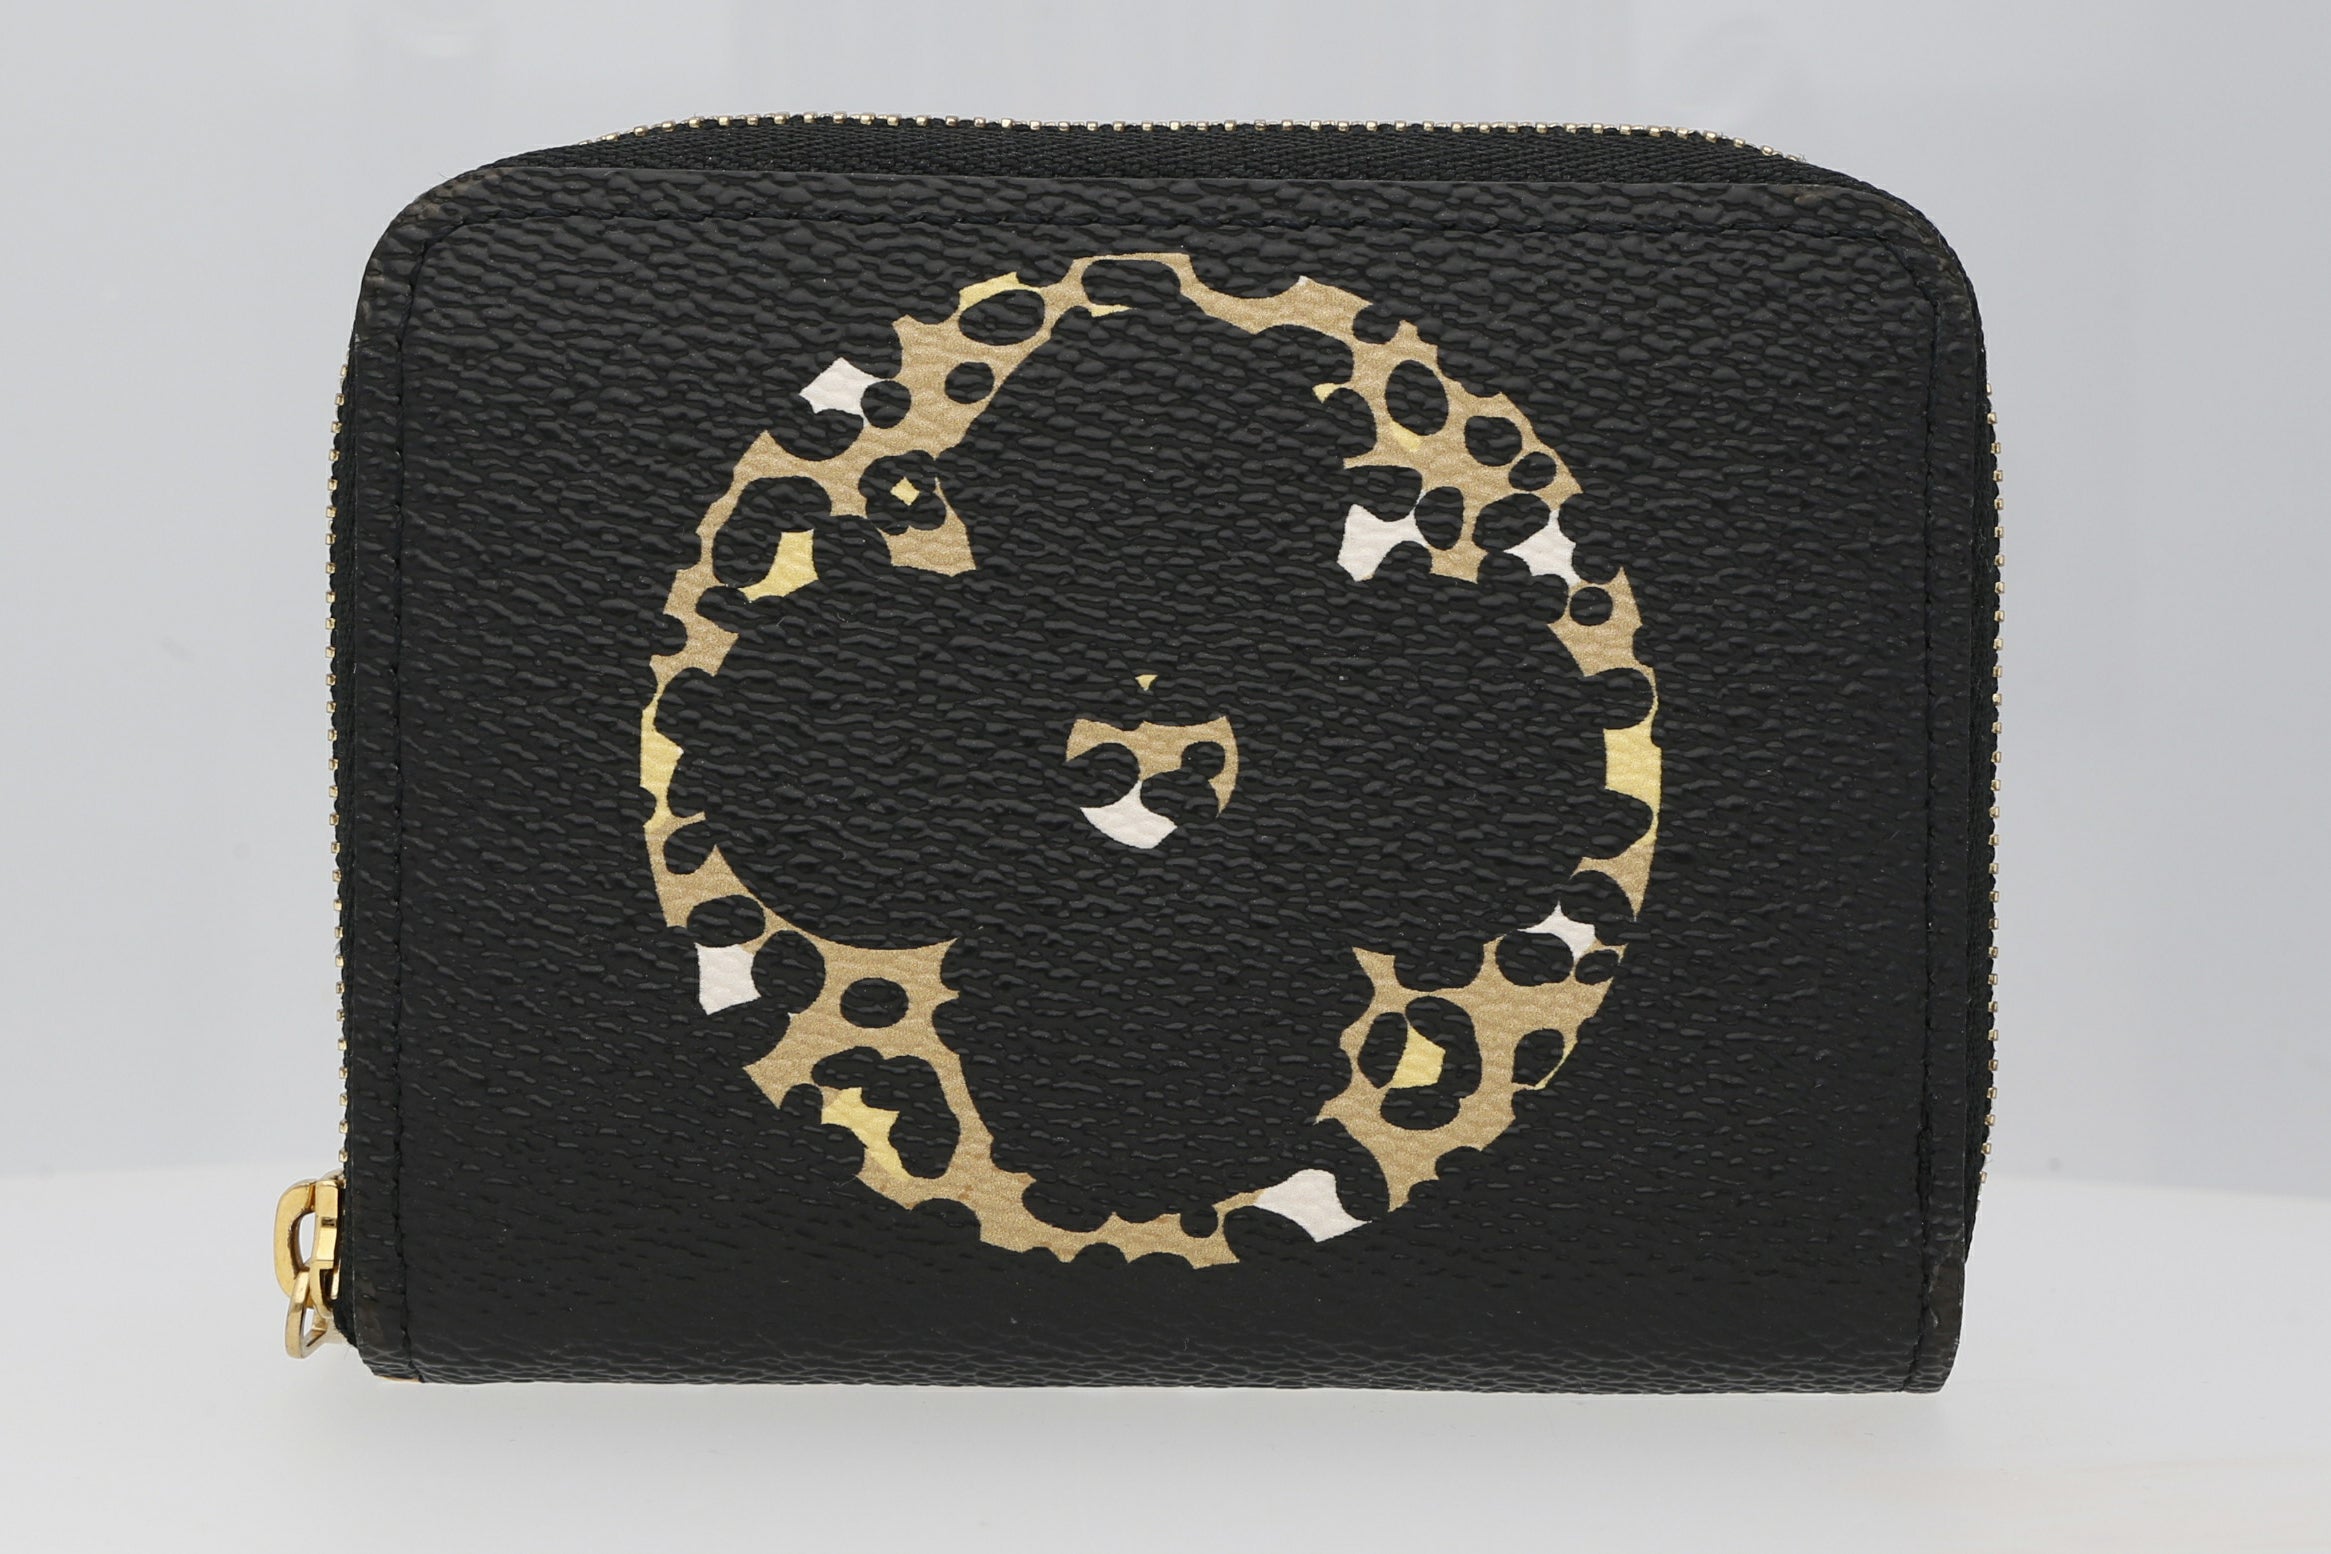 Second Hand Luxus Handtasche jetzt online kaufen auf kaleaz.